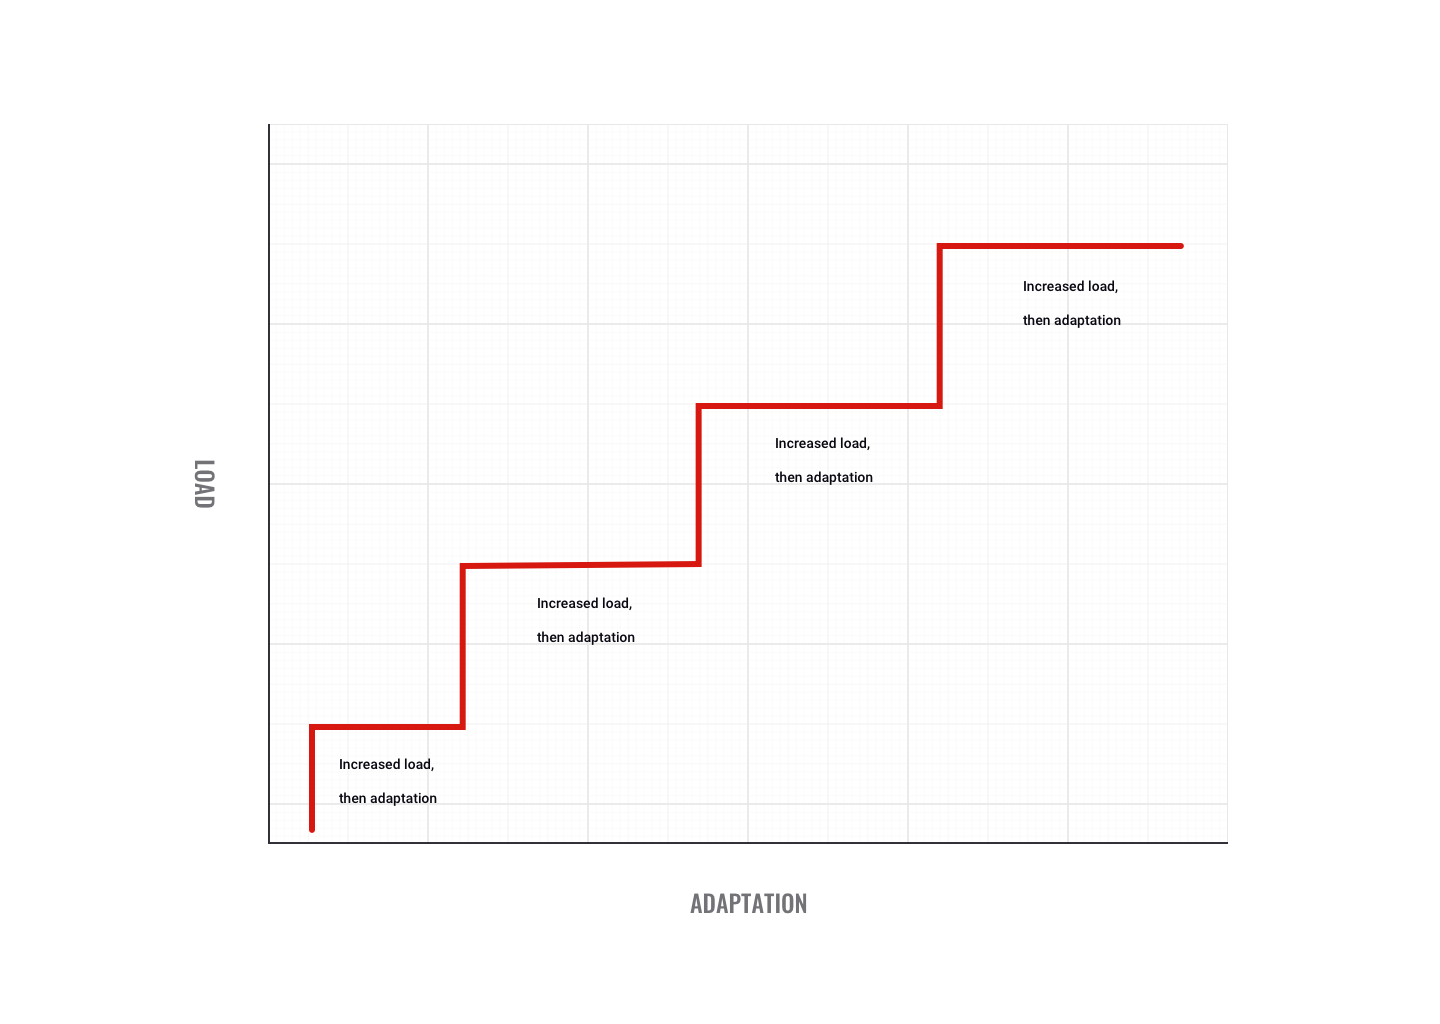 chart showing load vs adaptation